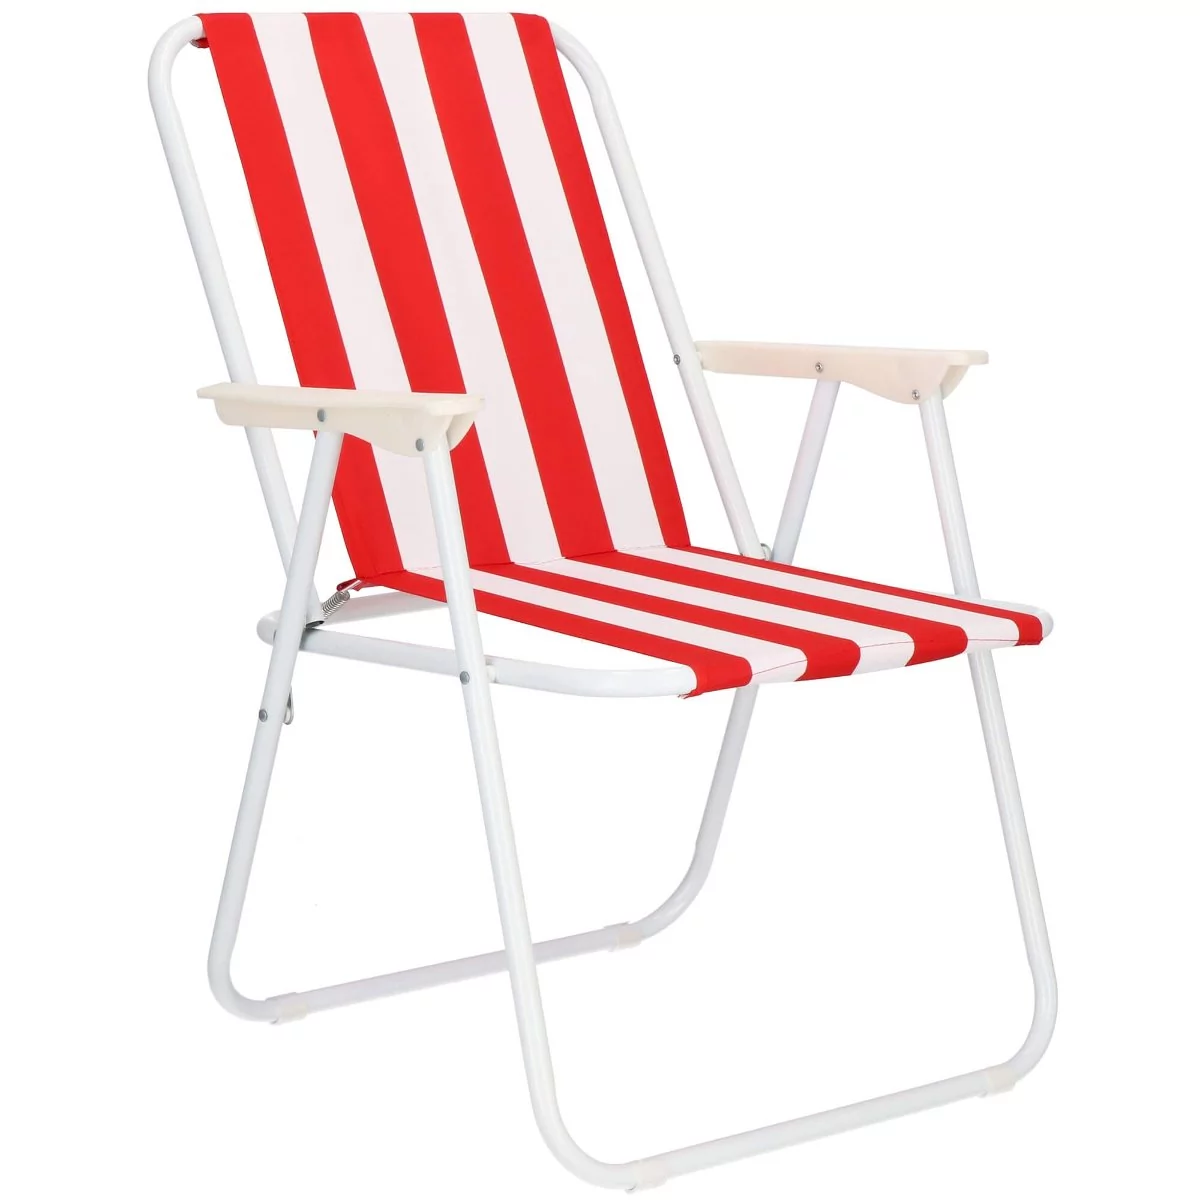 Krzesło składane turystyczne na plażę i do ogrodu czerwone pasy GC0052 -  Ceny i opinie na Skapiec.pl